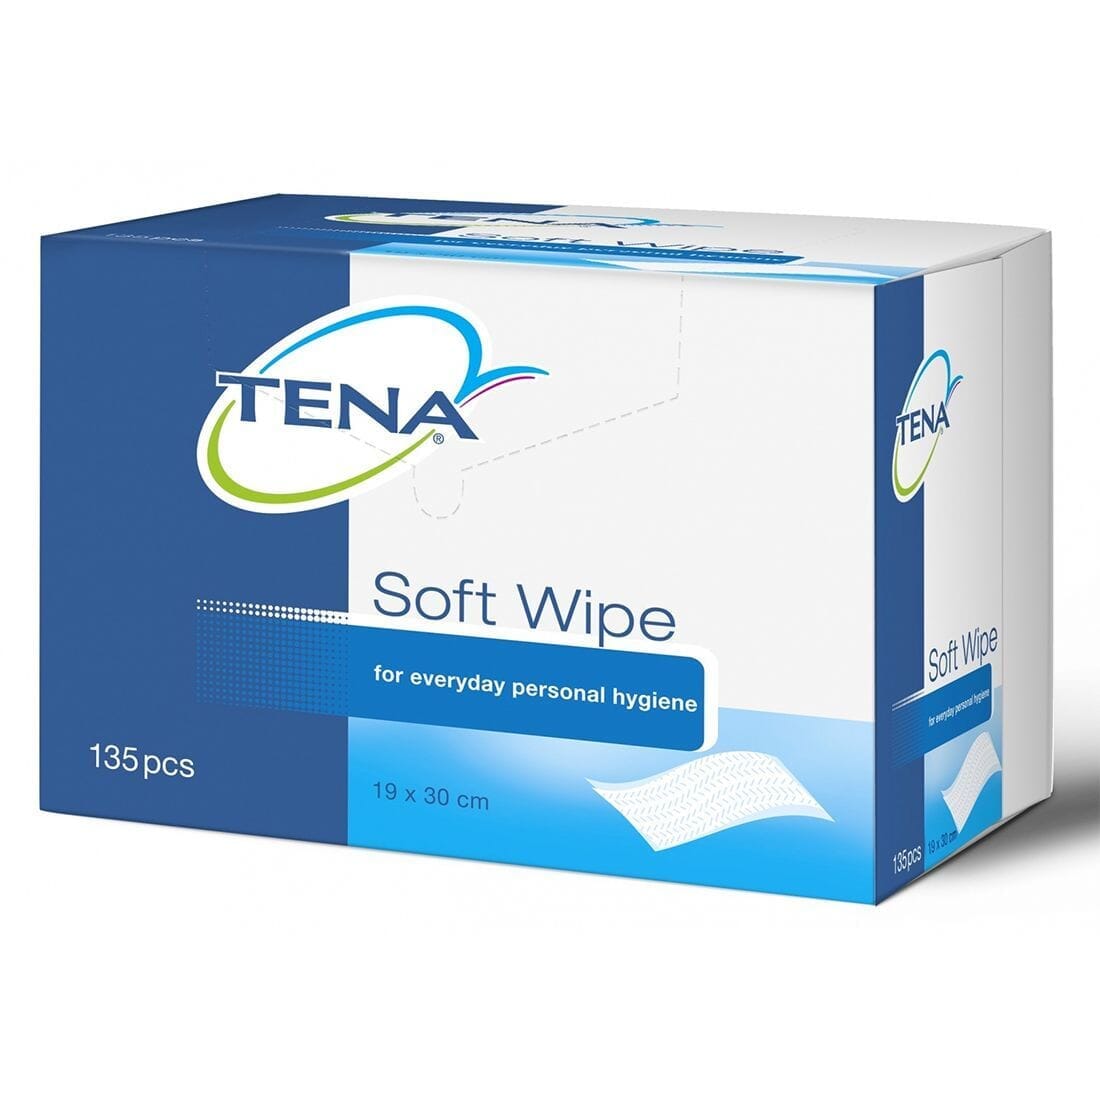 View Tena Soft Wipes Tena Soft Dry Wipes information